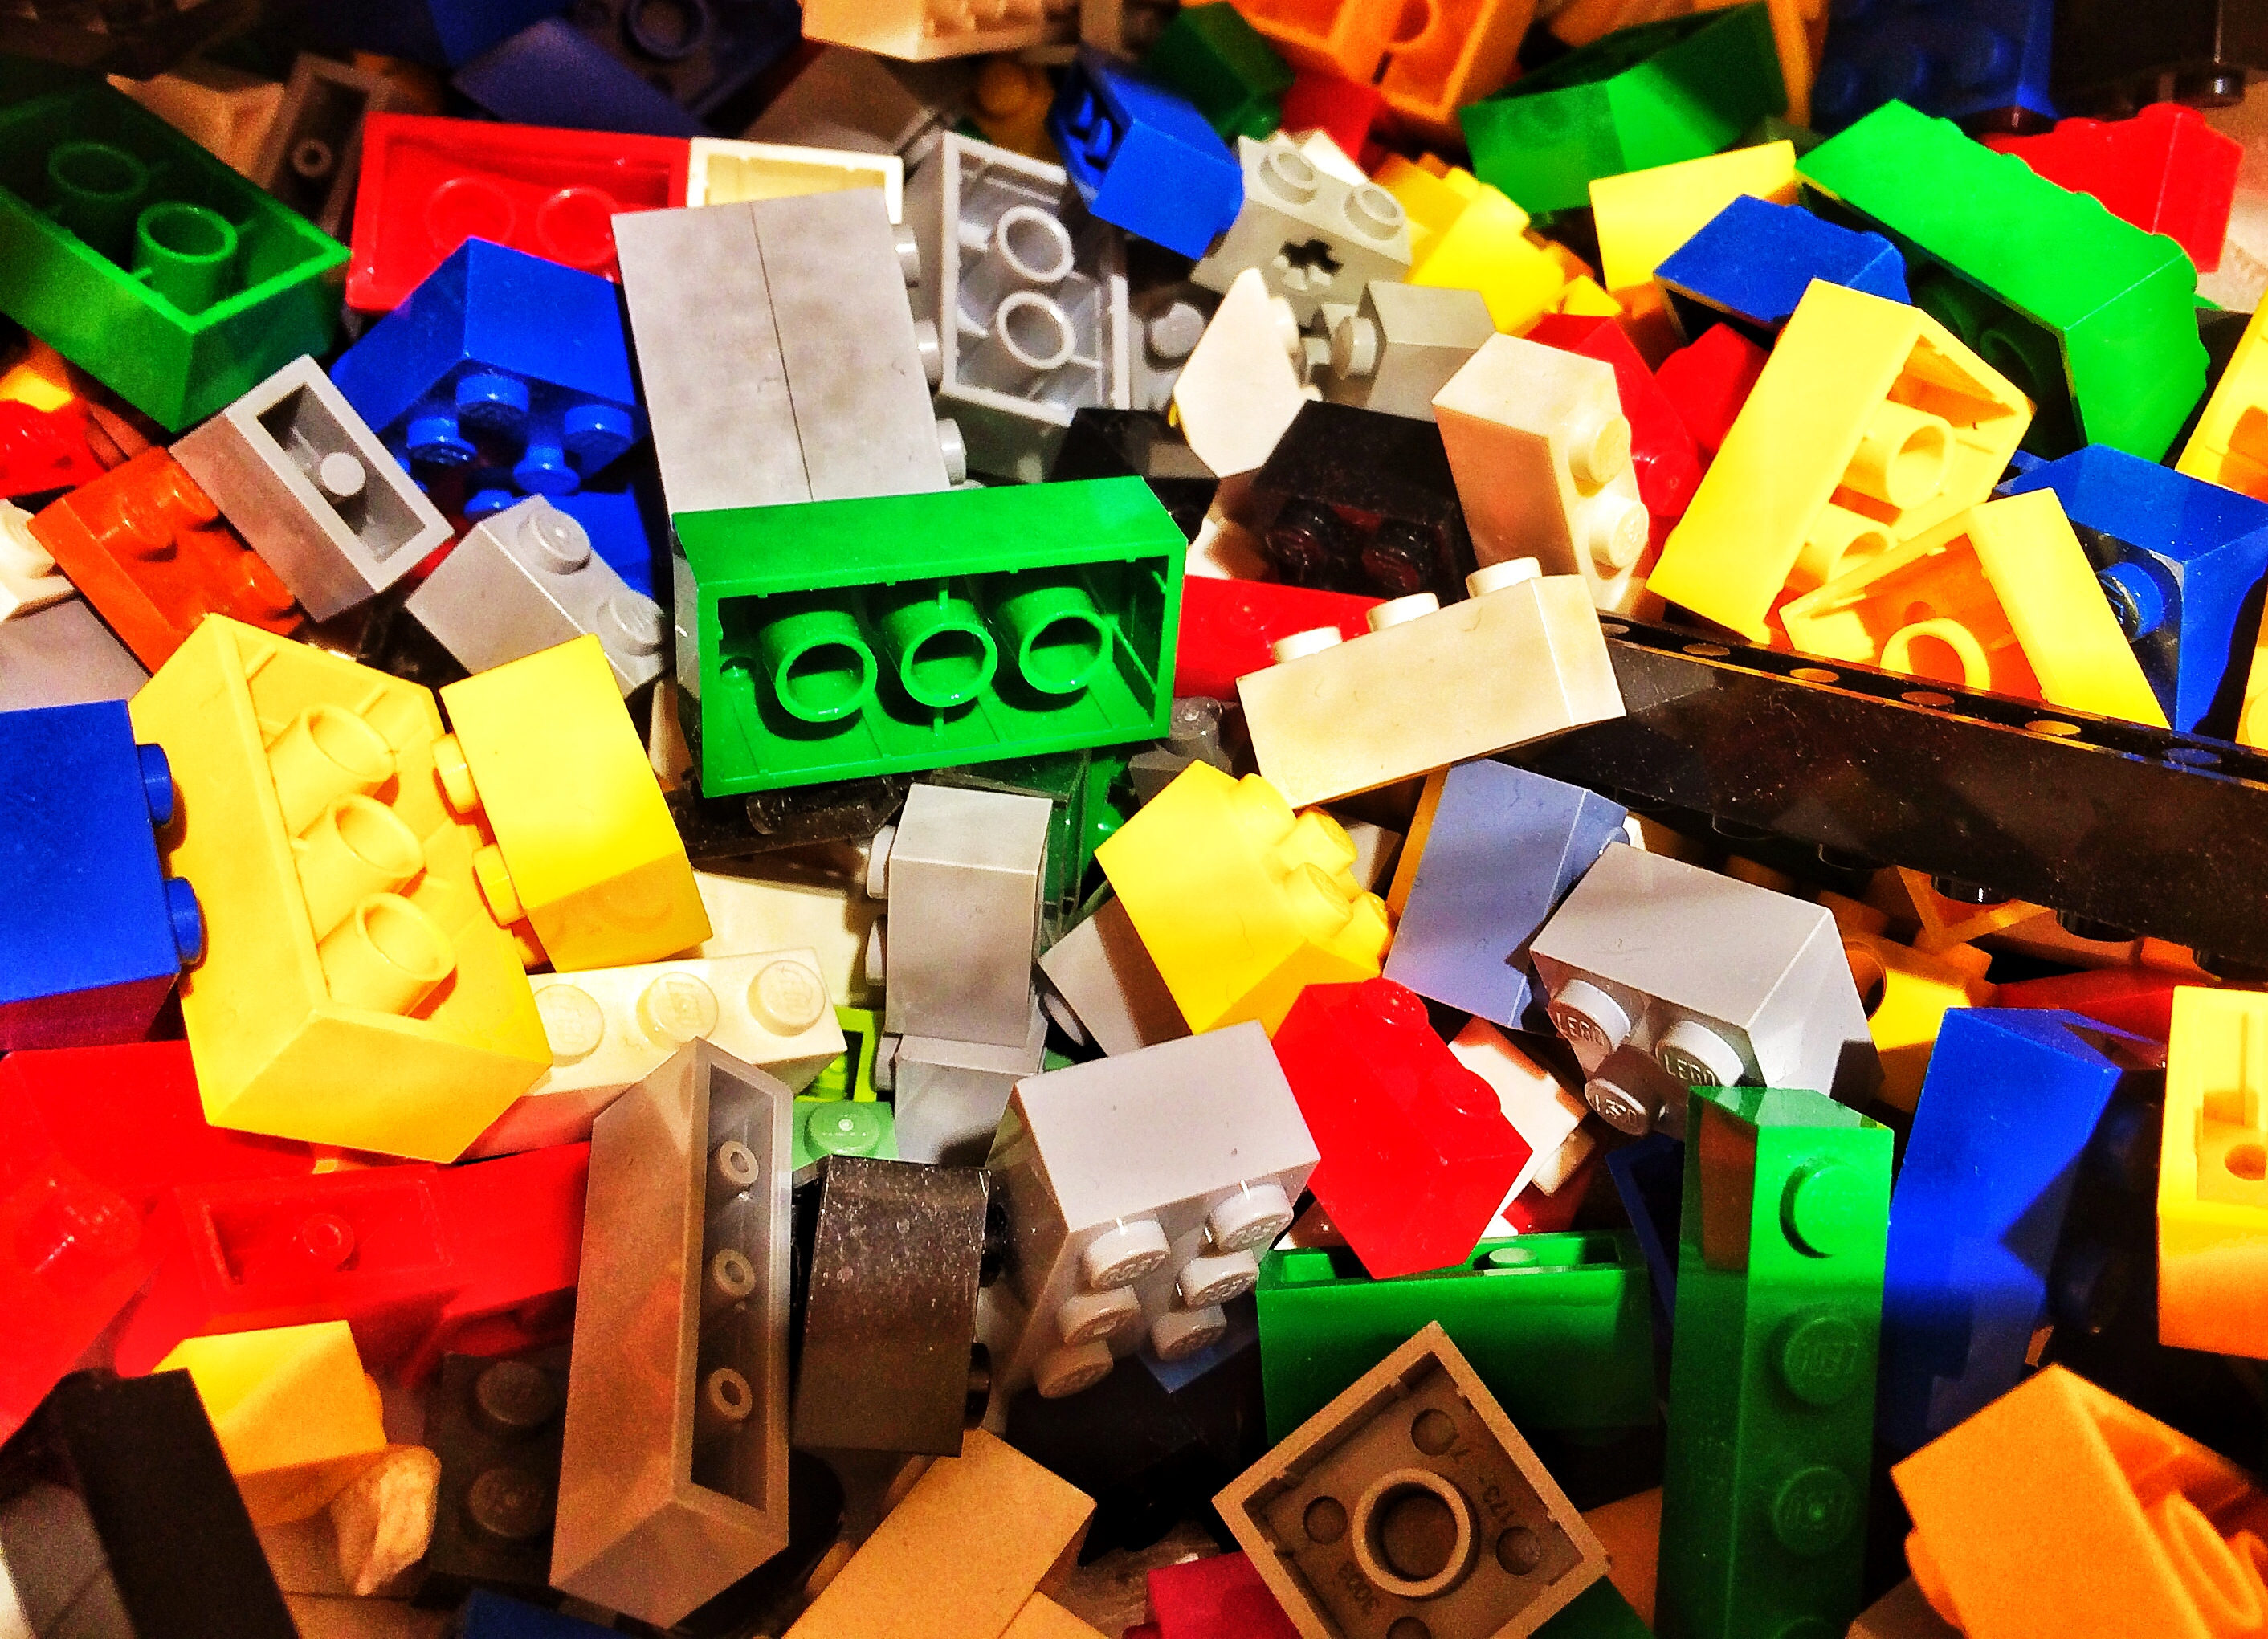 173 photos et images de Lego Girl - Getty Images